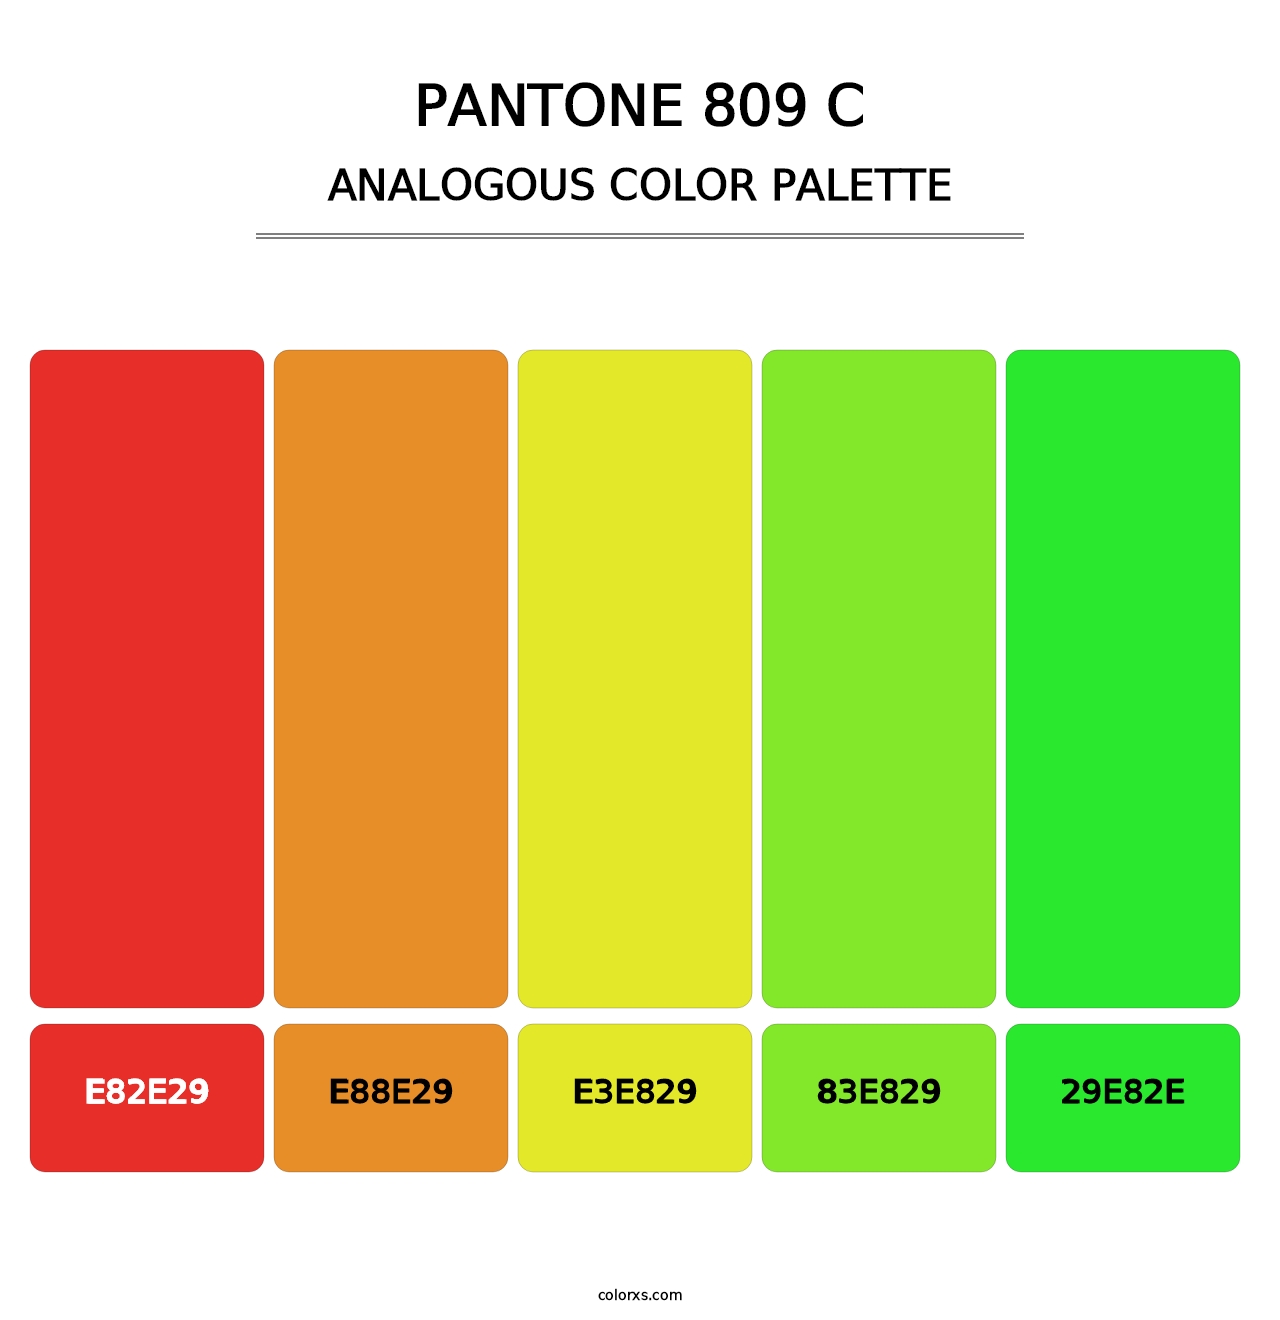 PANTONE 809 C - Analogous Color Palette